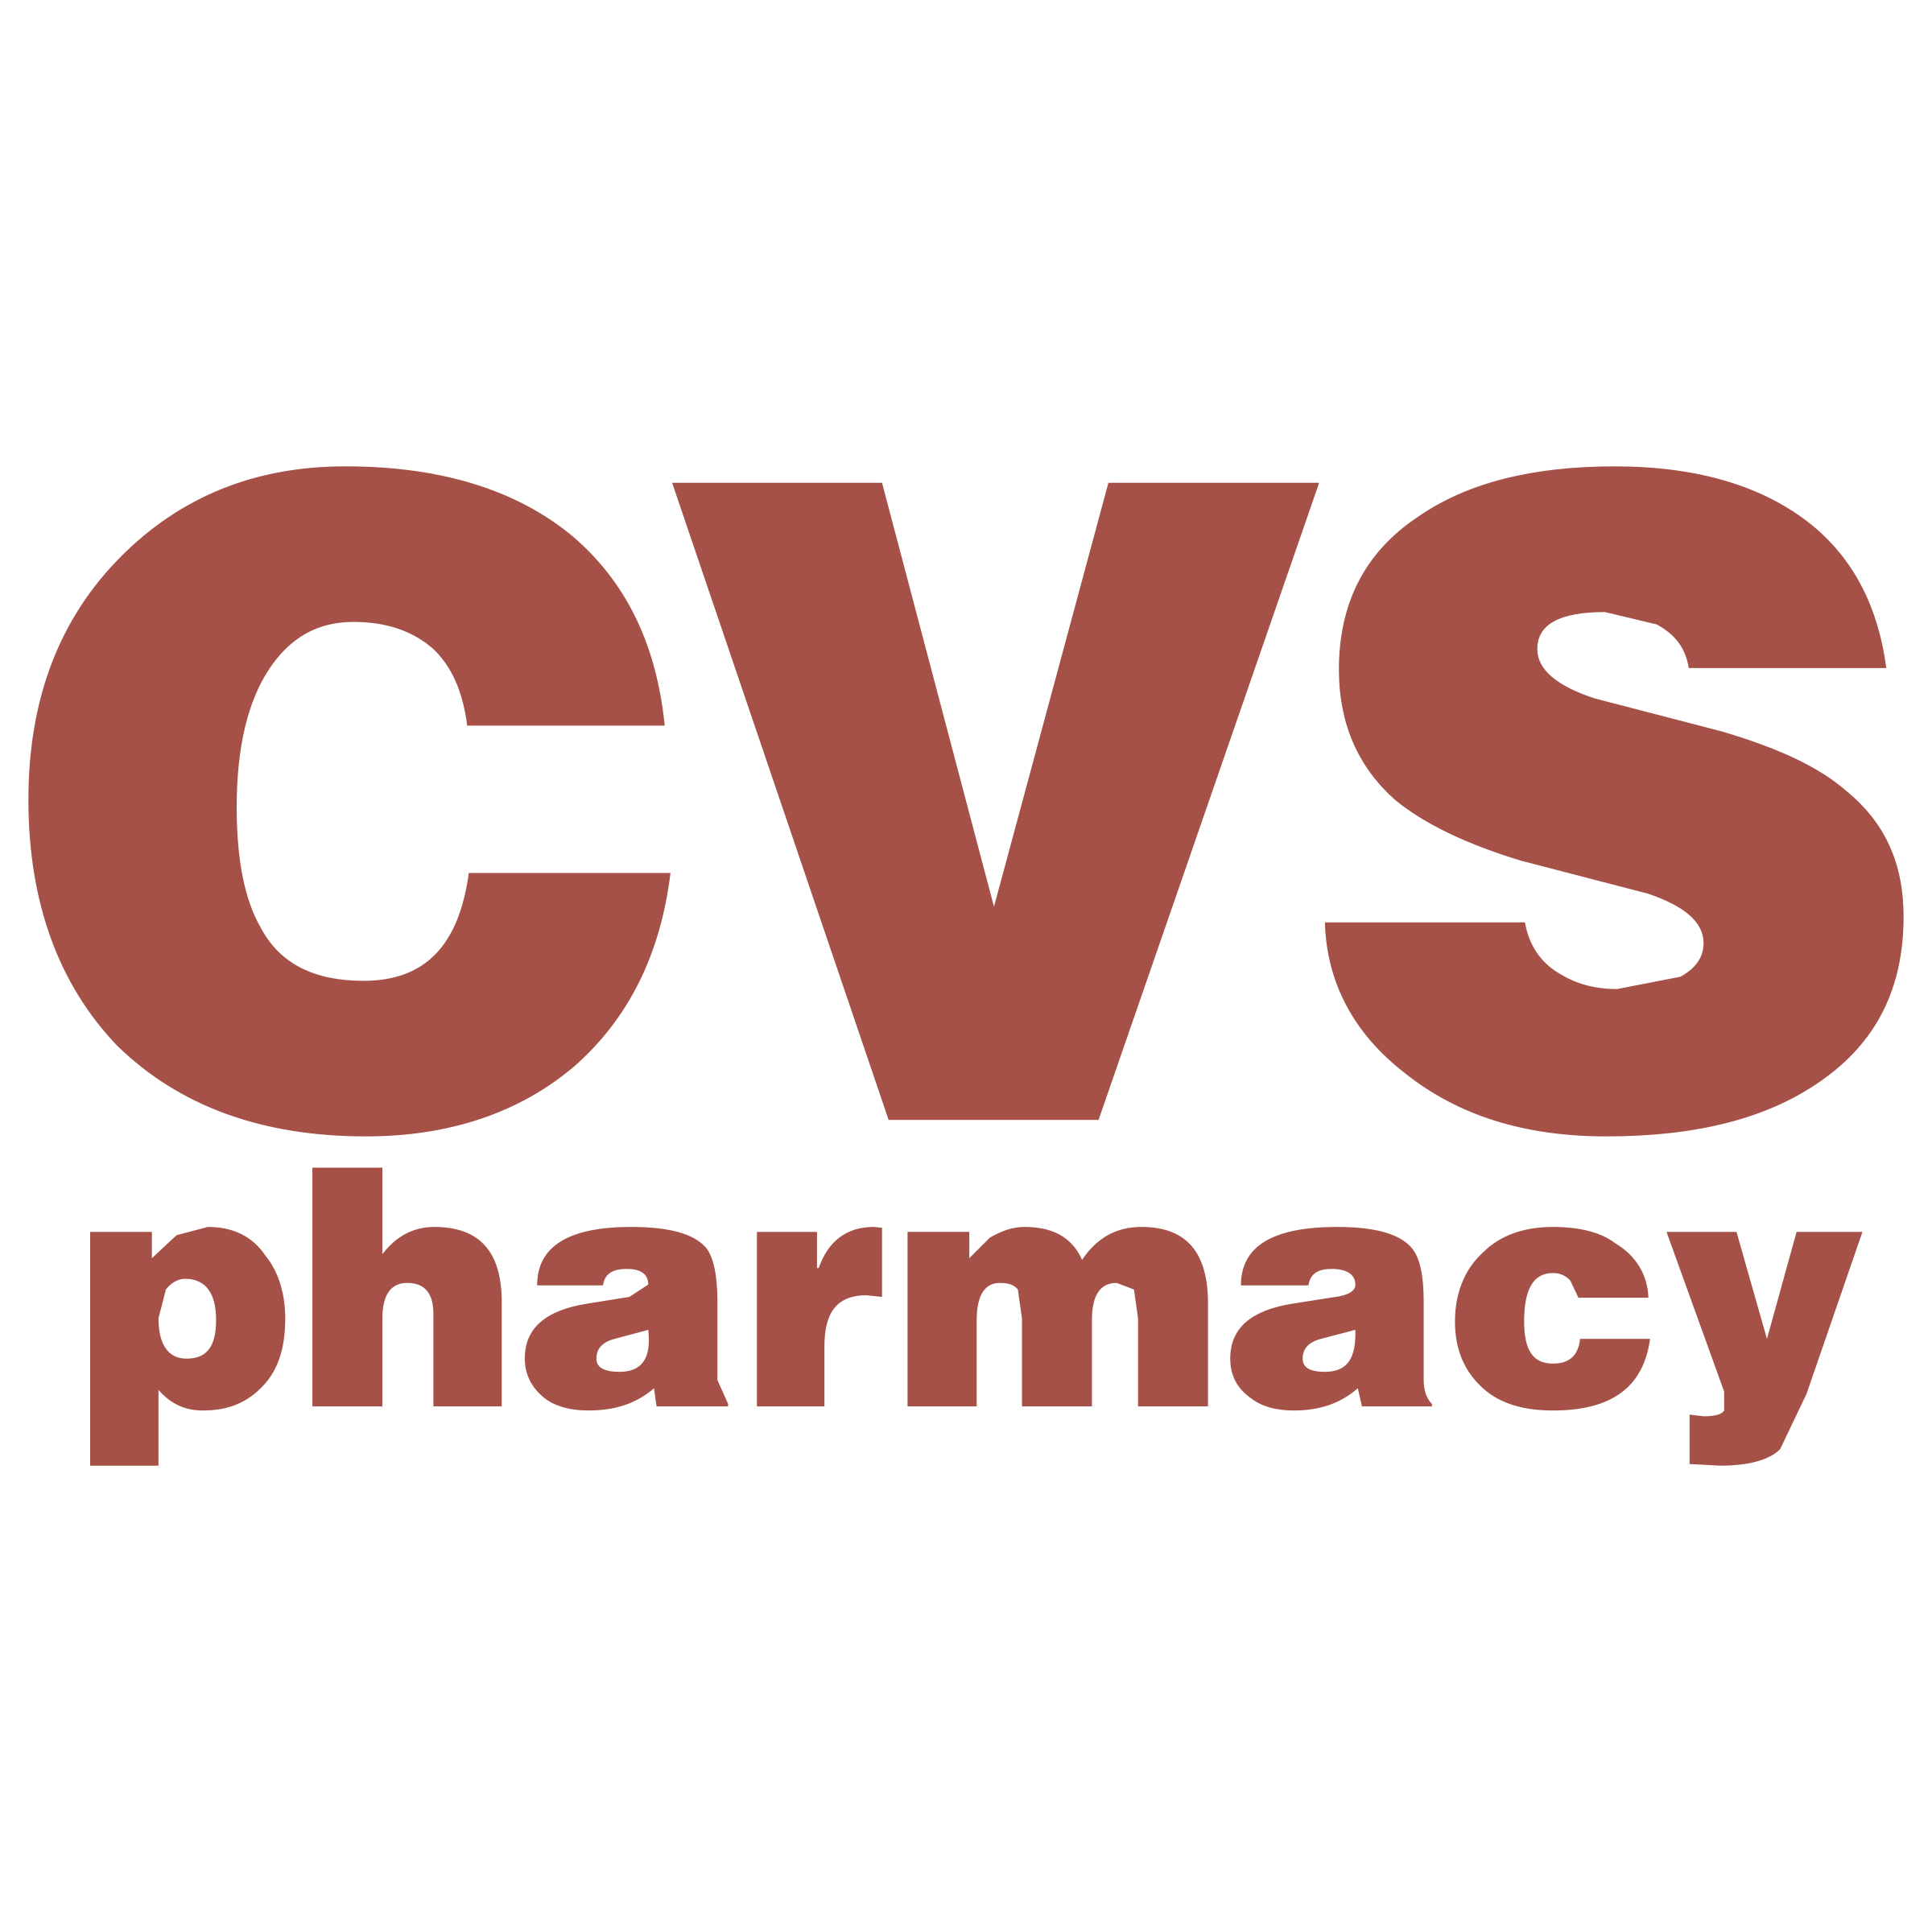 Cvs.com Logo - CVS Pharmacy Logo PNG Transparent & SVG Vector - Freebie Supply